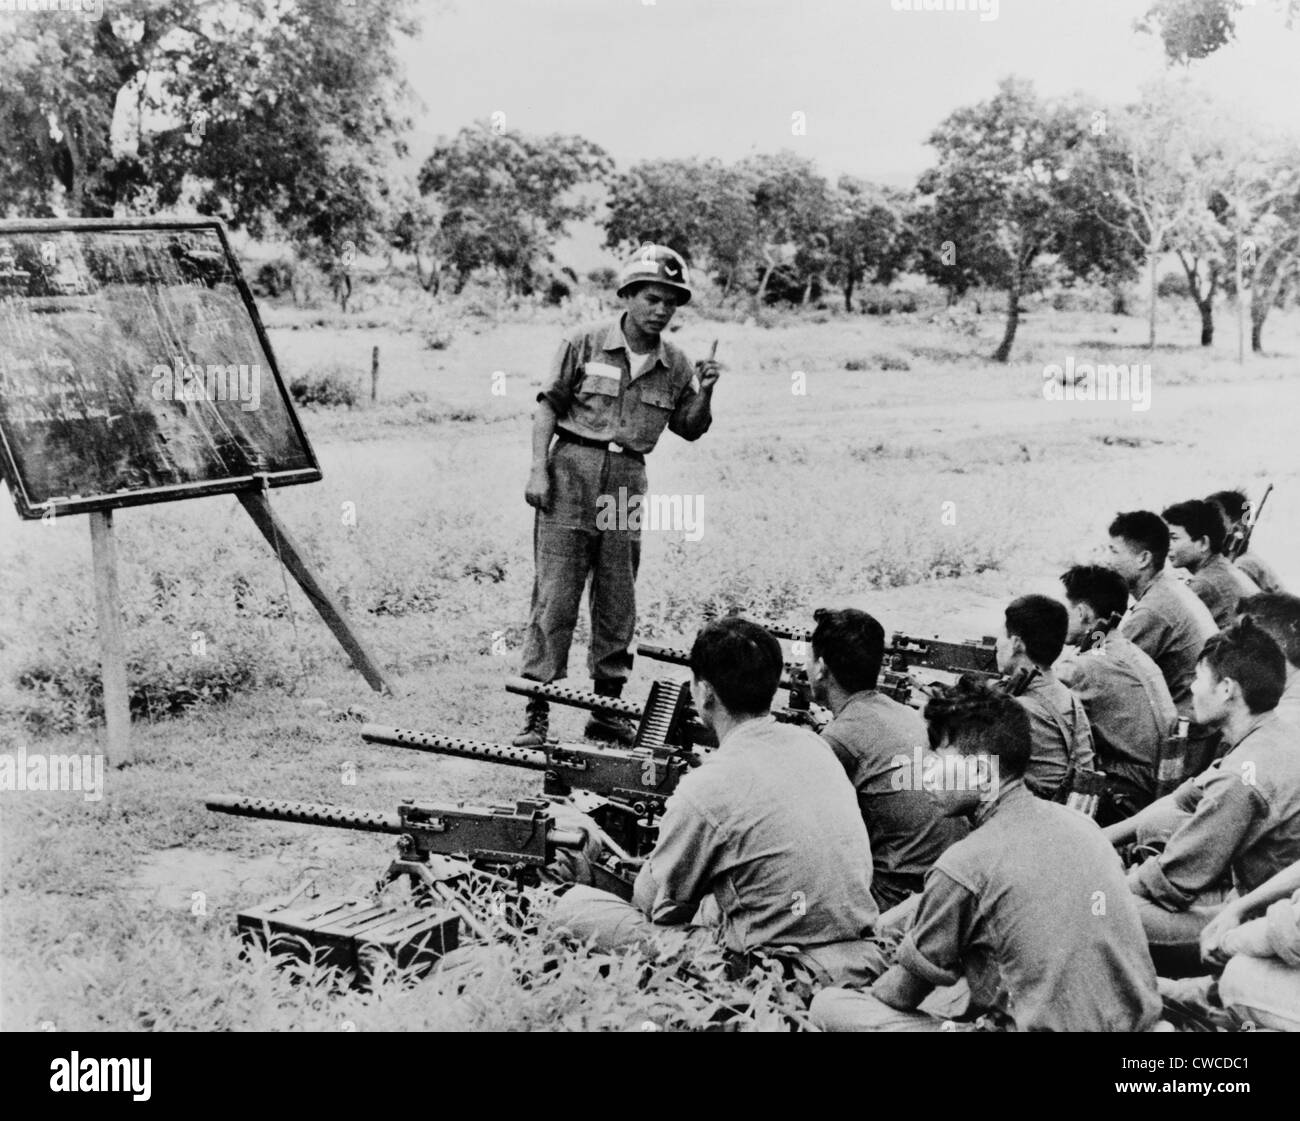 Les troupes de la Garde civile vietnamienne qui reçoivent une formation sur l'utilisation de mitrailleuse Browning en chanson Mao, le Vietnam. 1963. Banque D'Images